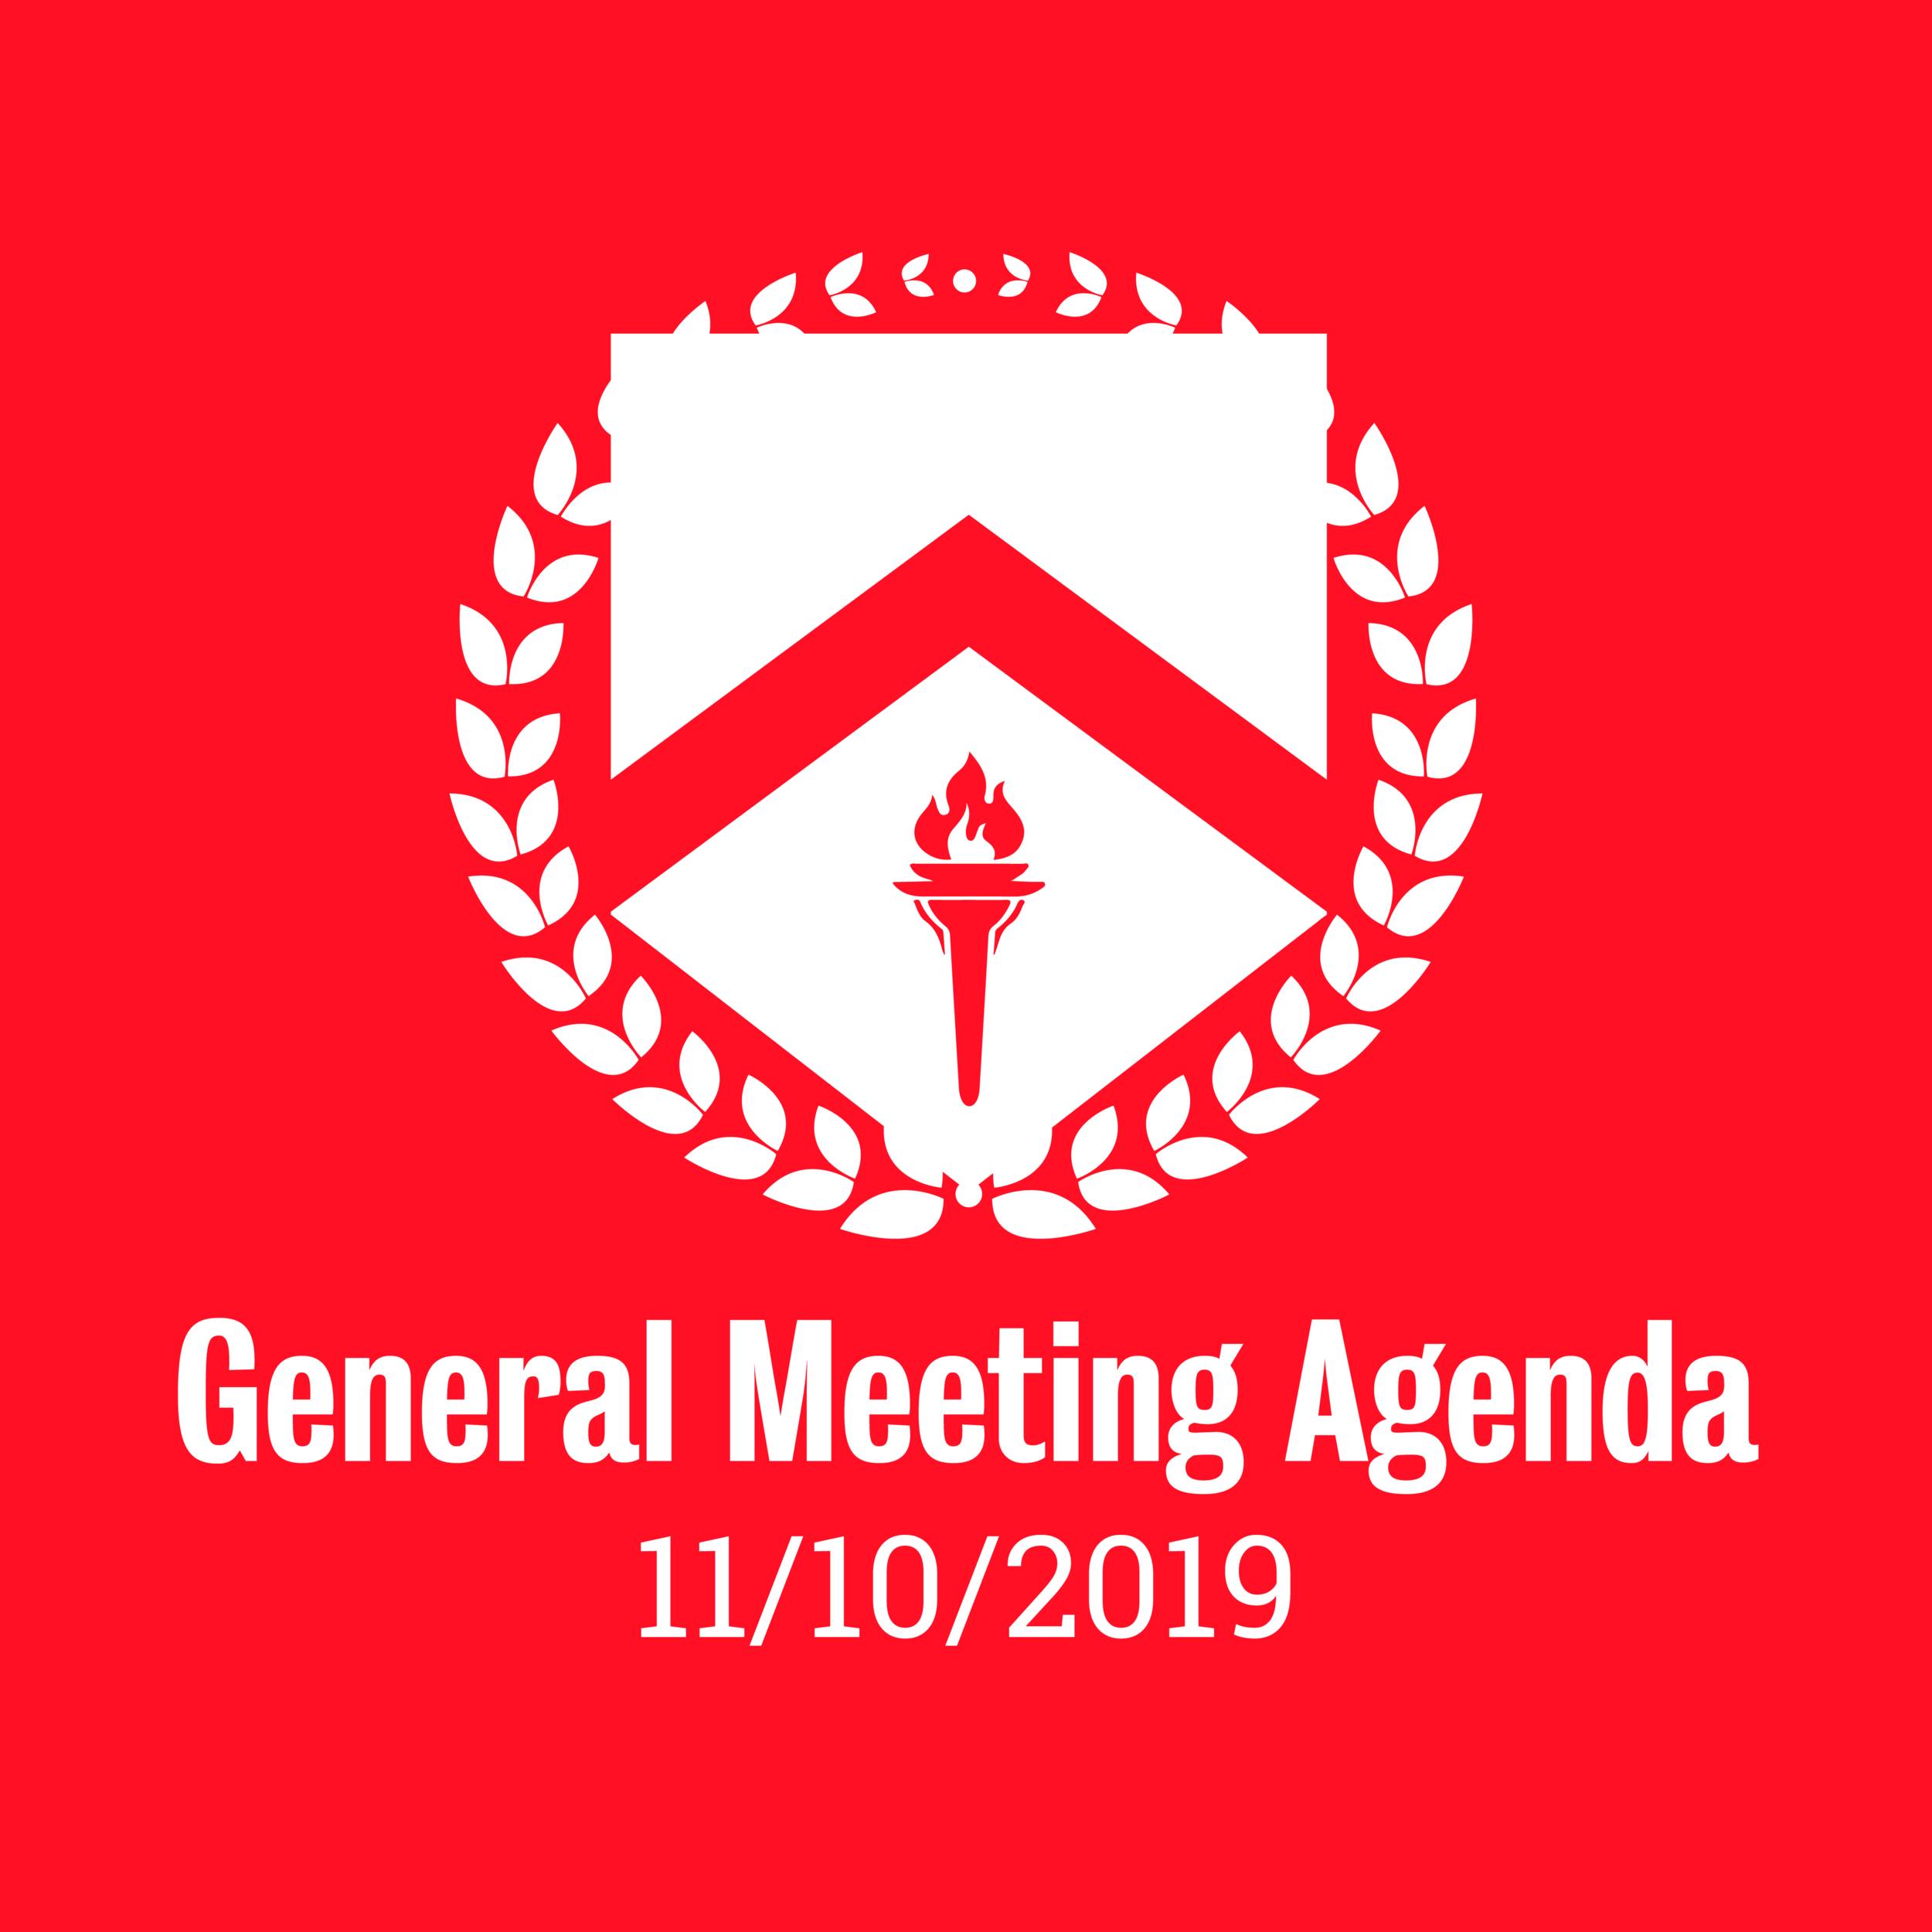 General Meeting Agenda 11/10/2019